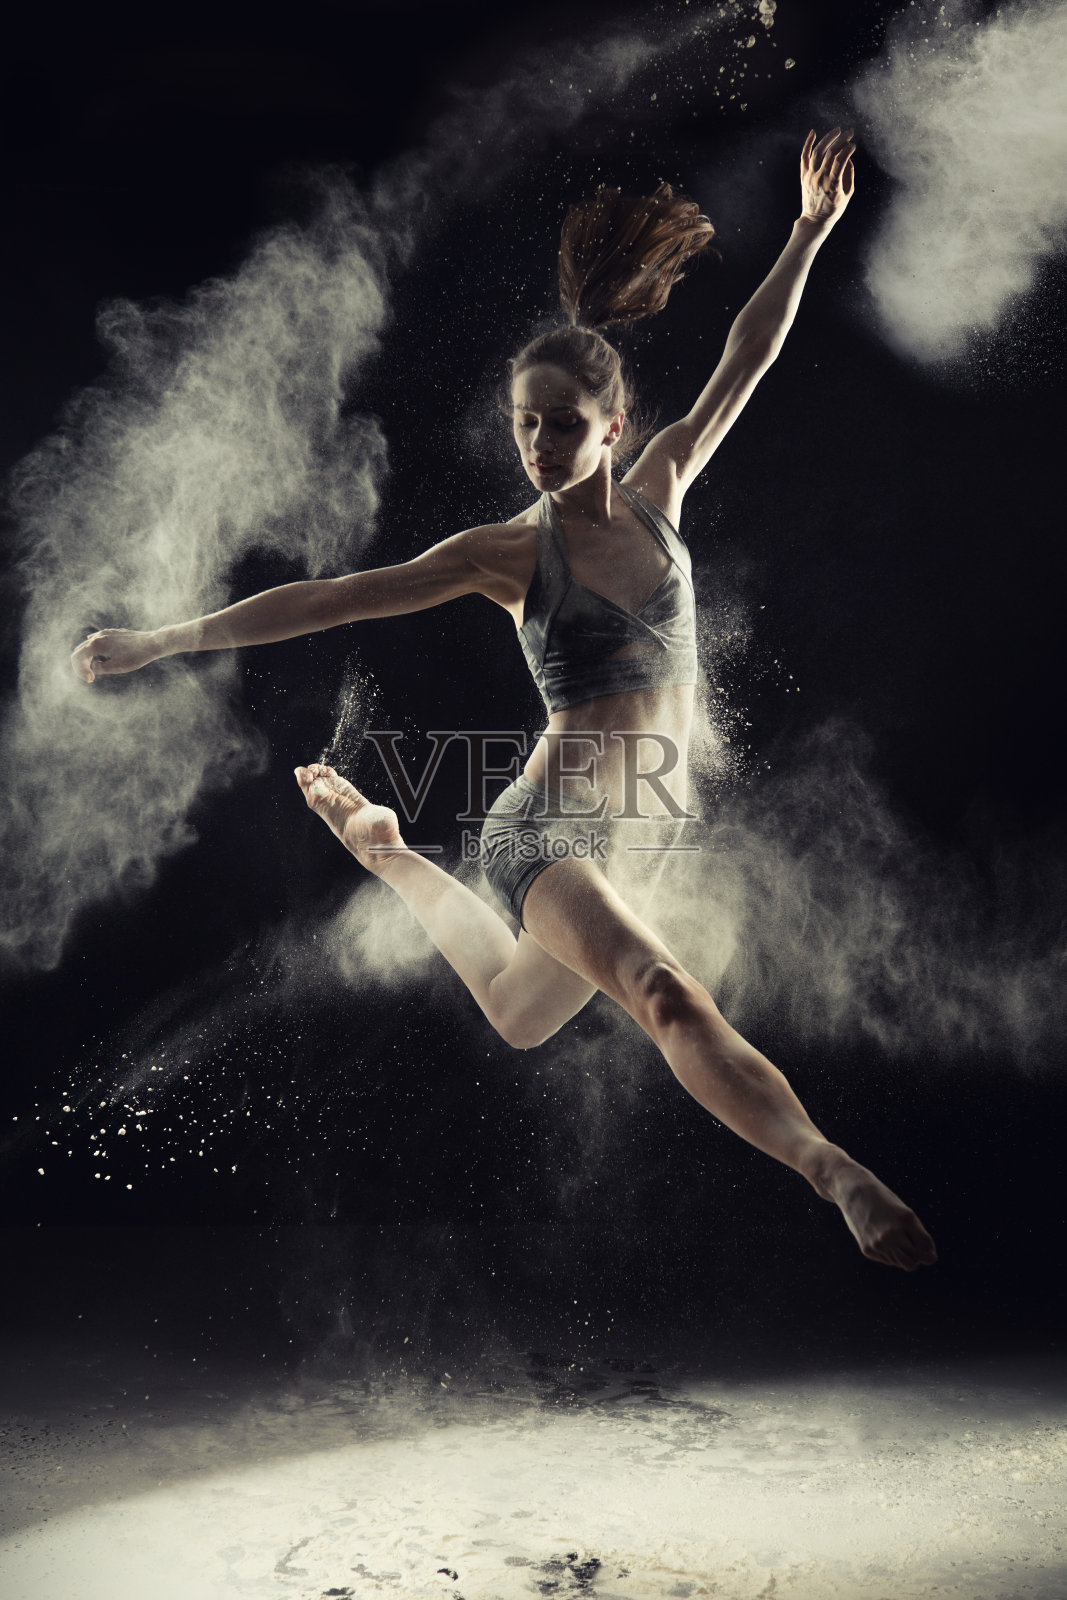 神奇的芭蕾舞者在粉雪中跳舞照片摄影图片